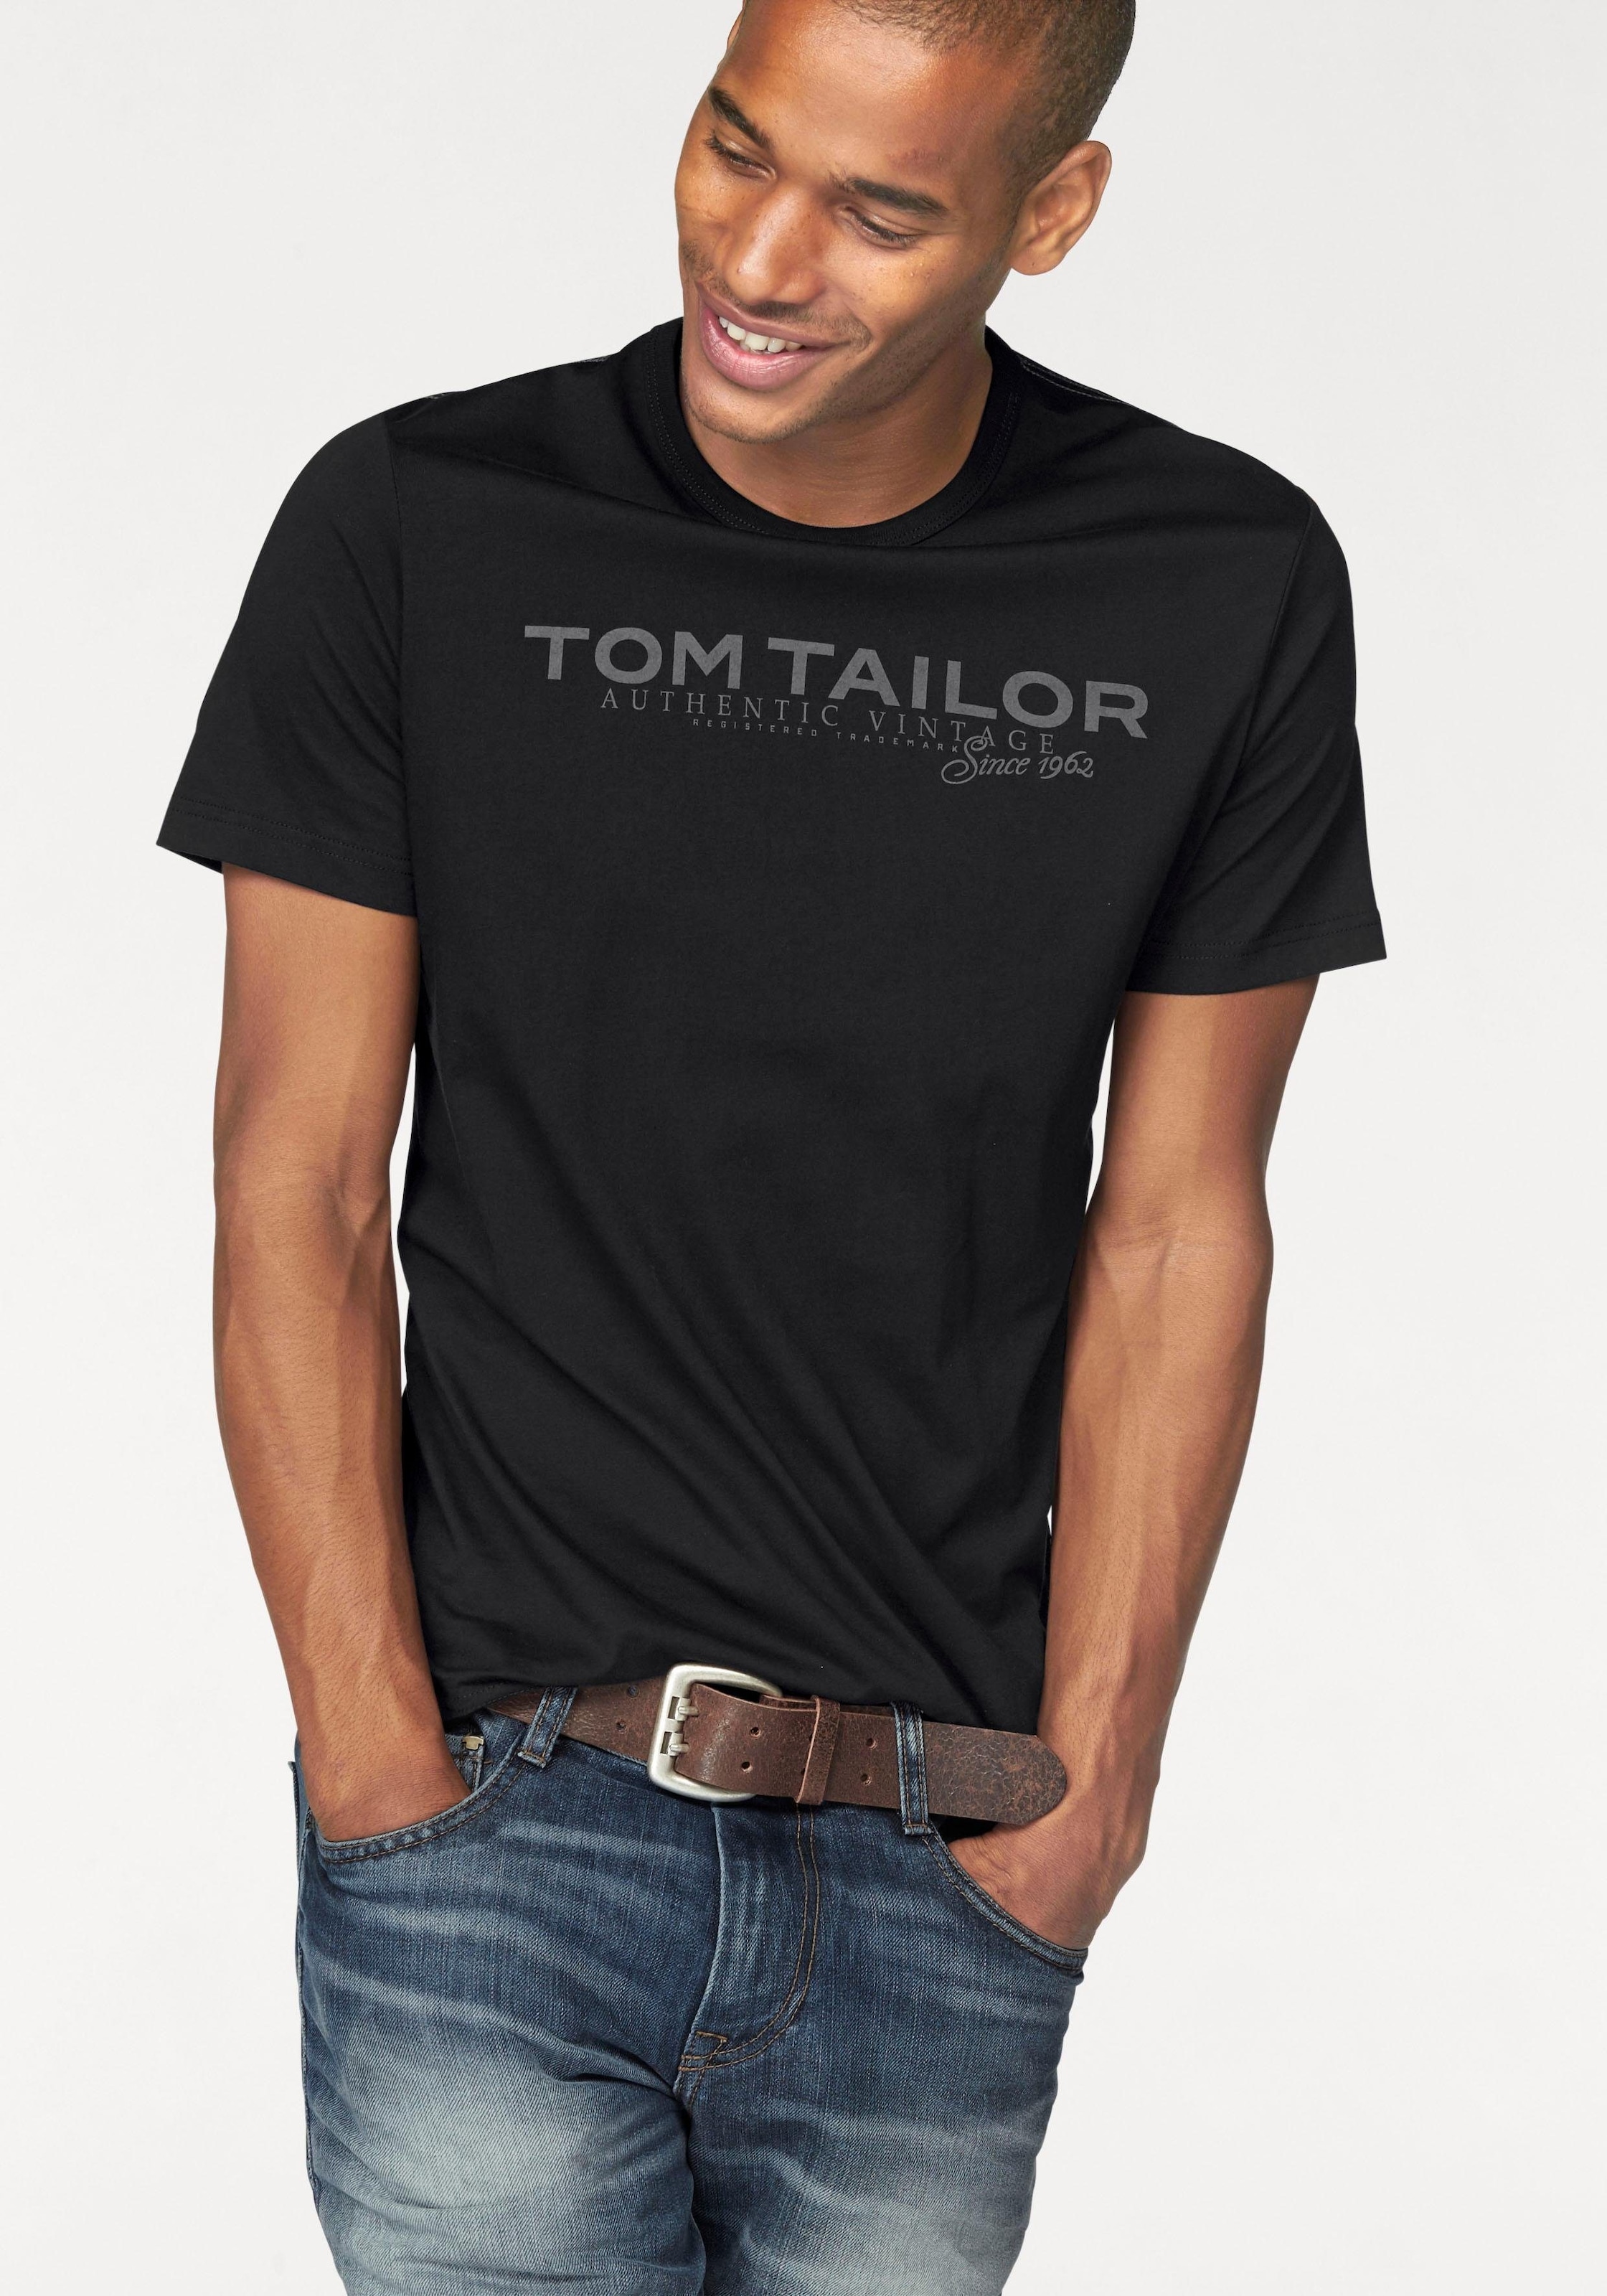 TOM TAILOR Herren Logo Print T-Shirt